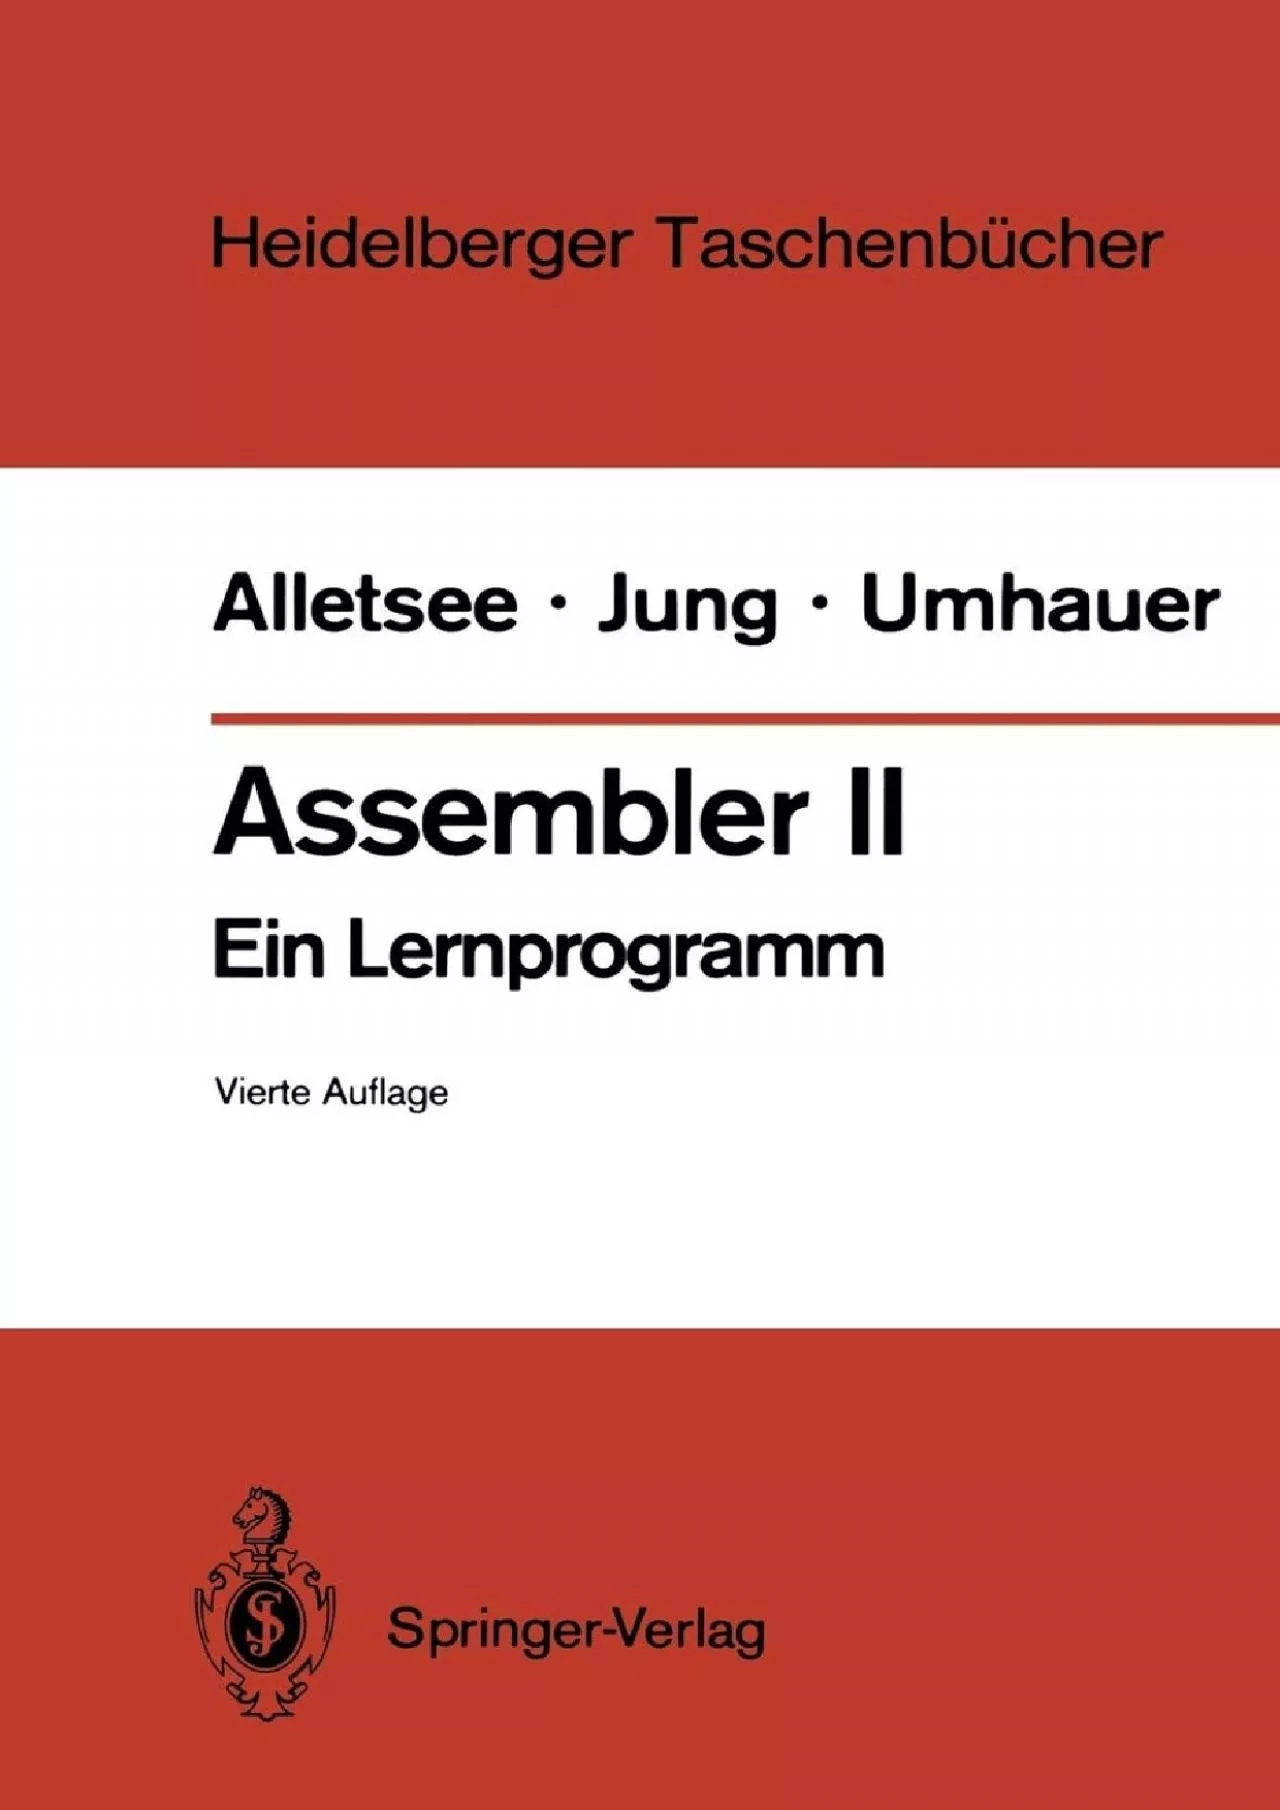 [READING BOOK]-Assembler II: Ein Lernprogramm (Heidelberger Taschenbücher, 141) (German